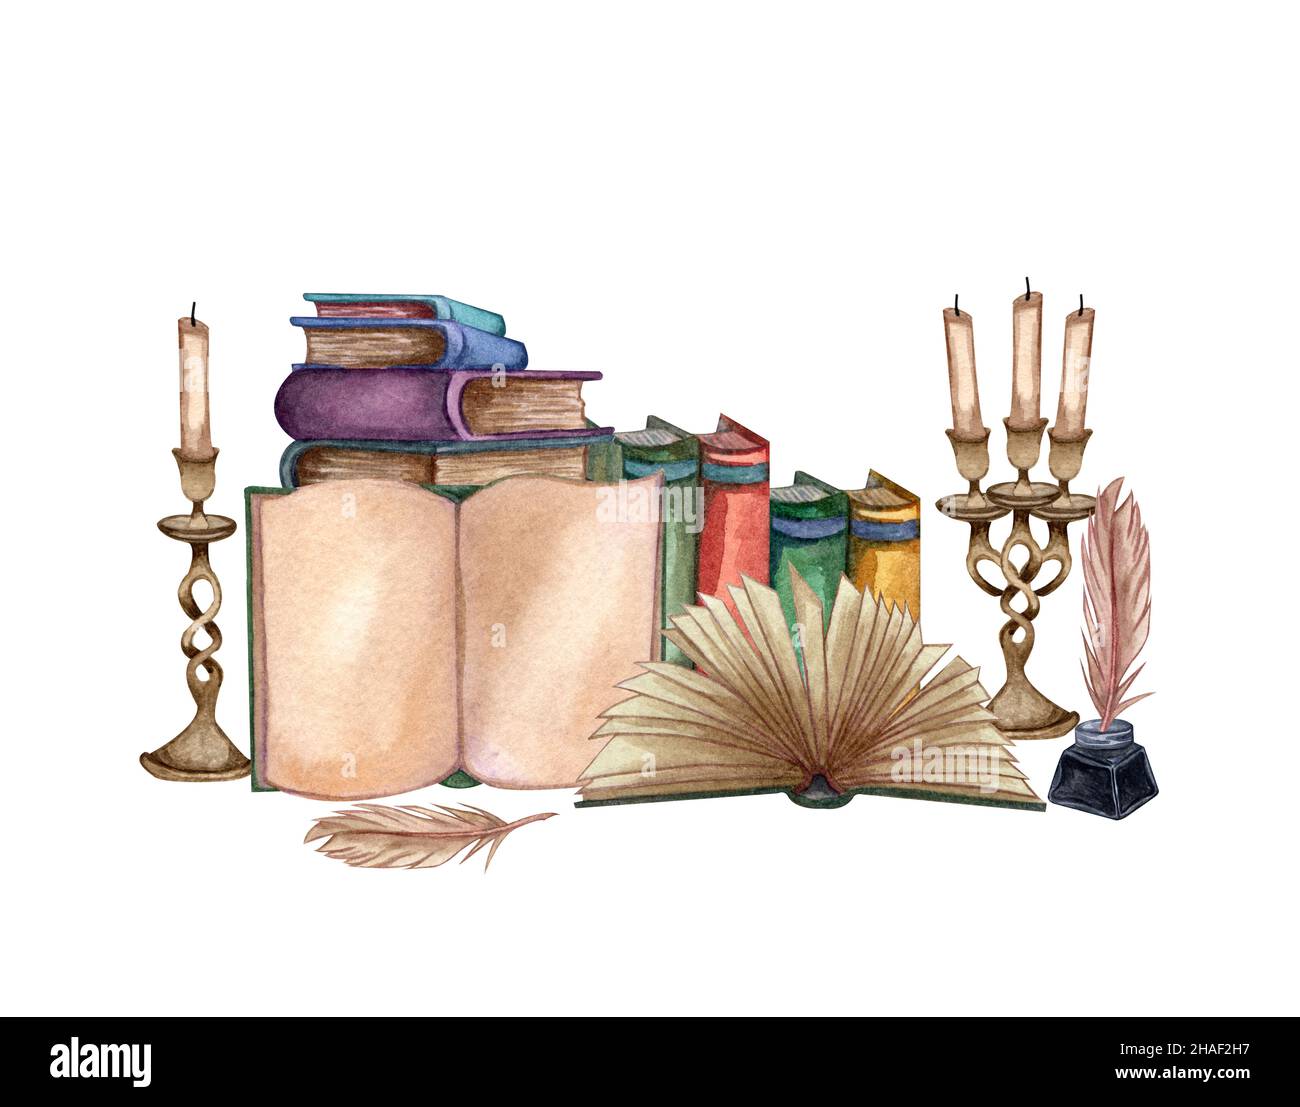 Handgezeichnete Aquarellillustration ein Stapel alter Bücher, Tintenflasche, Tintenfeder, florales offenes Buch, seltenes Papier, Kerzen. Antike Objekte. Stockfoto